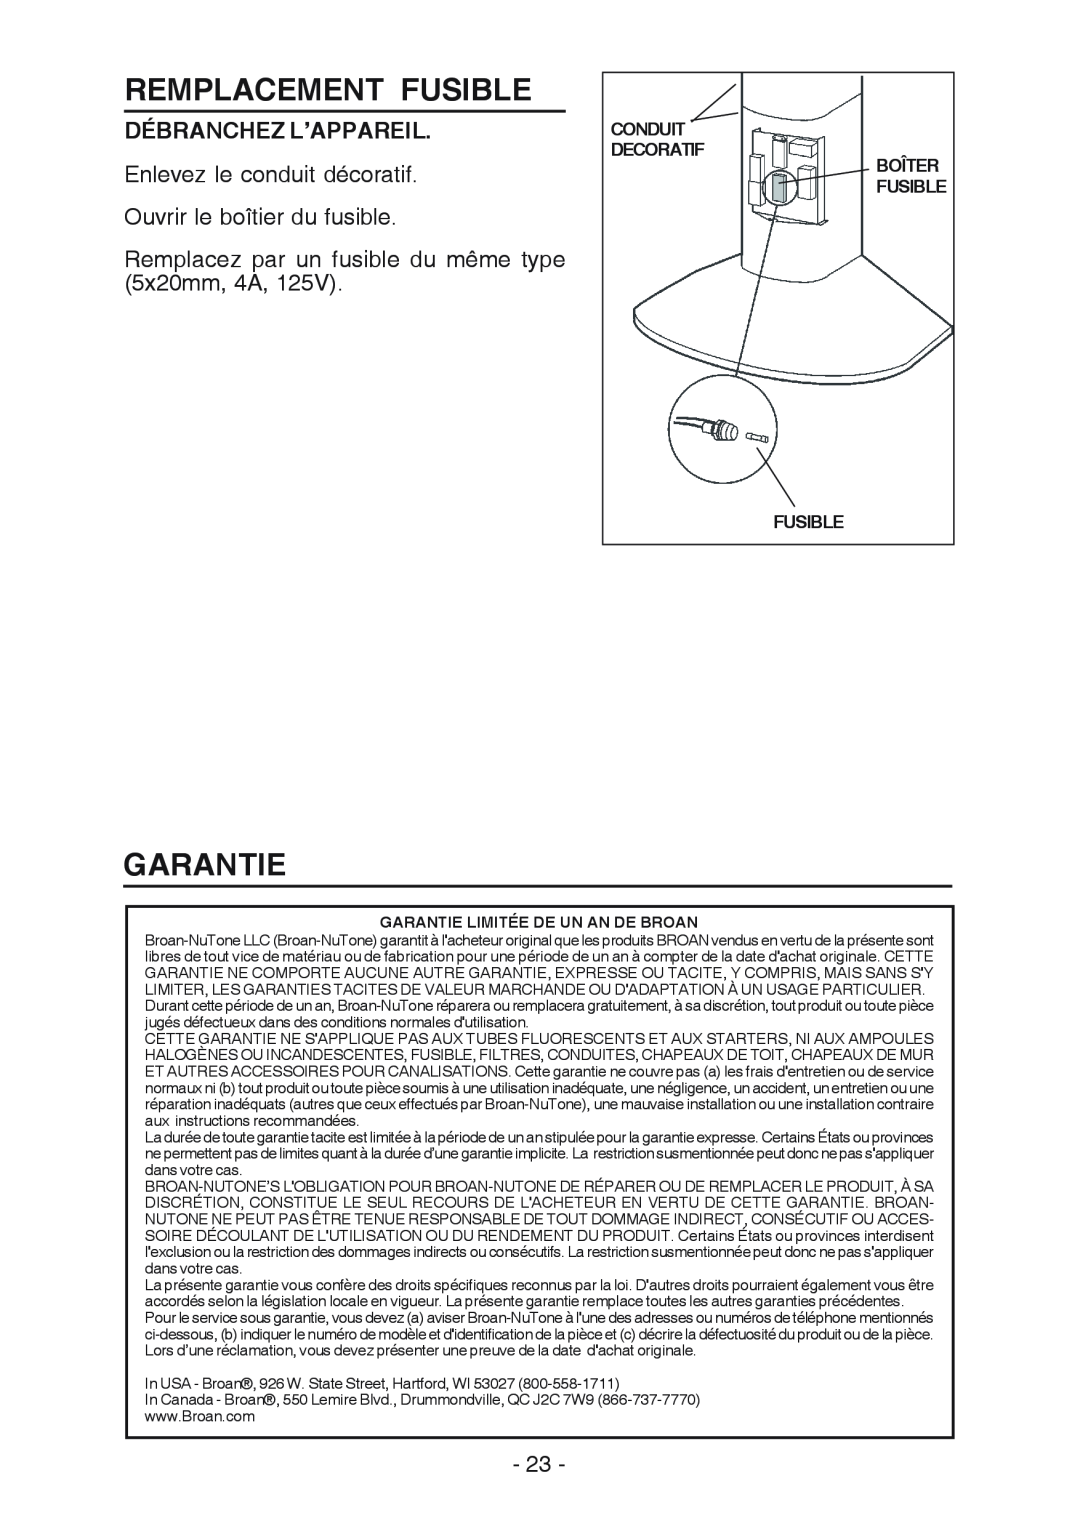 Broan RM519004 manual Remplacement Fusible, Garantie, Débranchez L’Appareil 